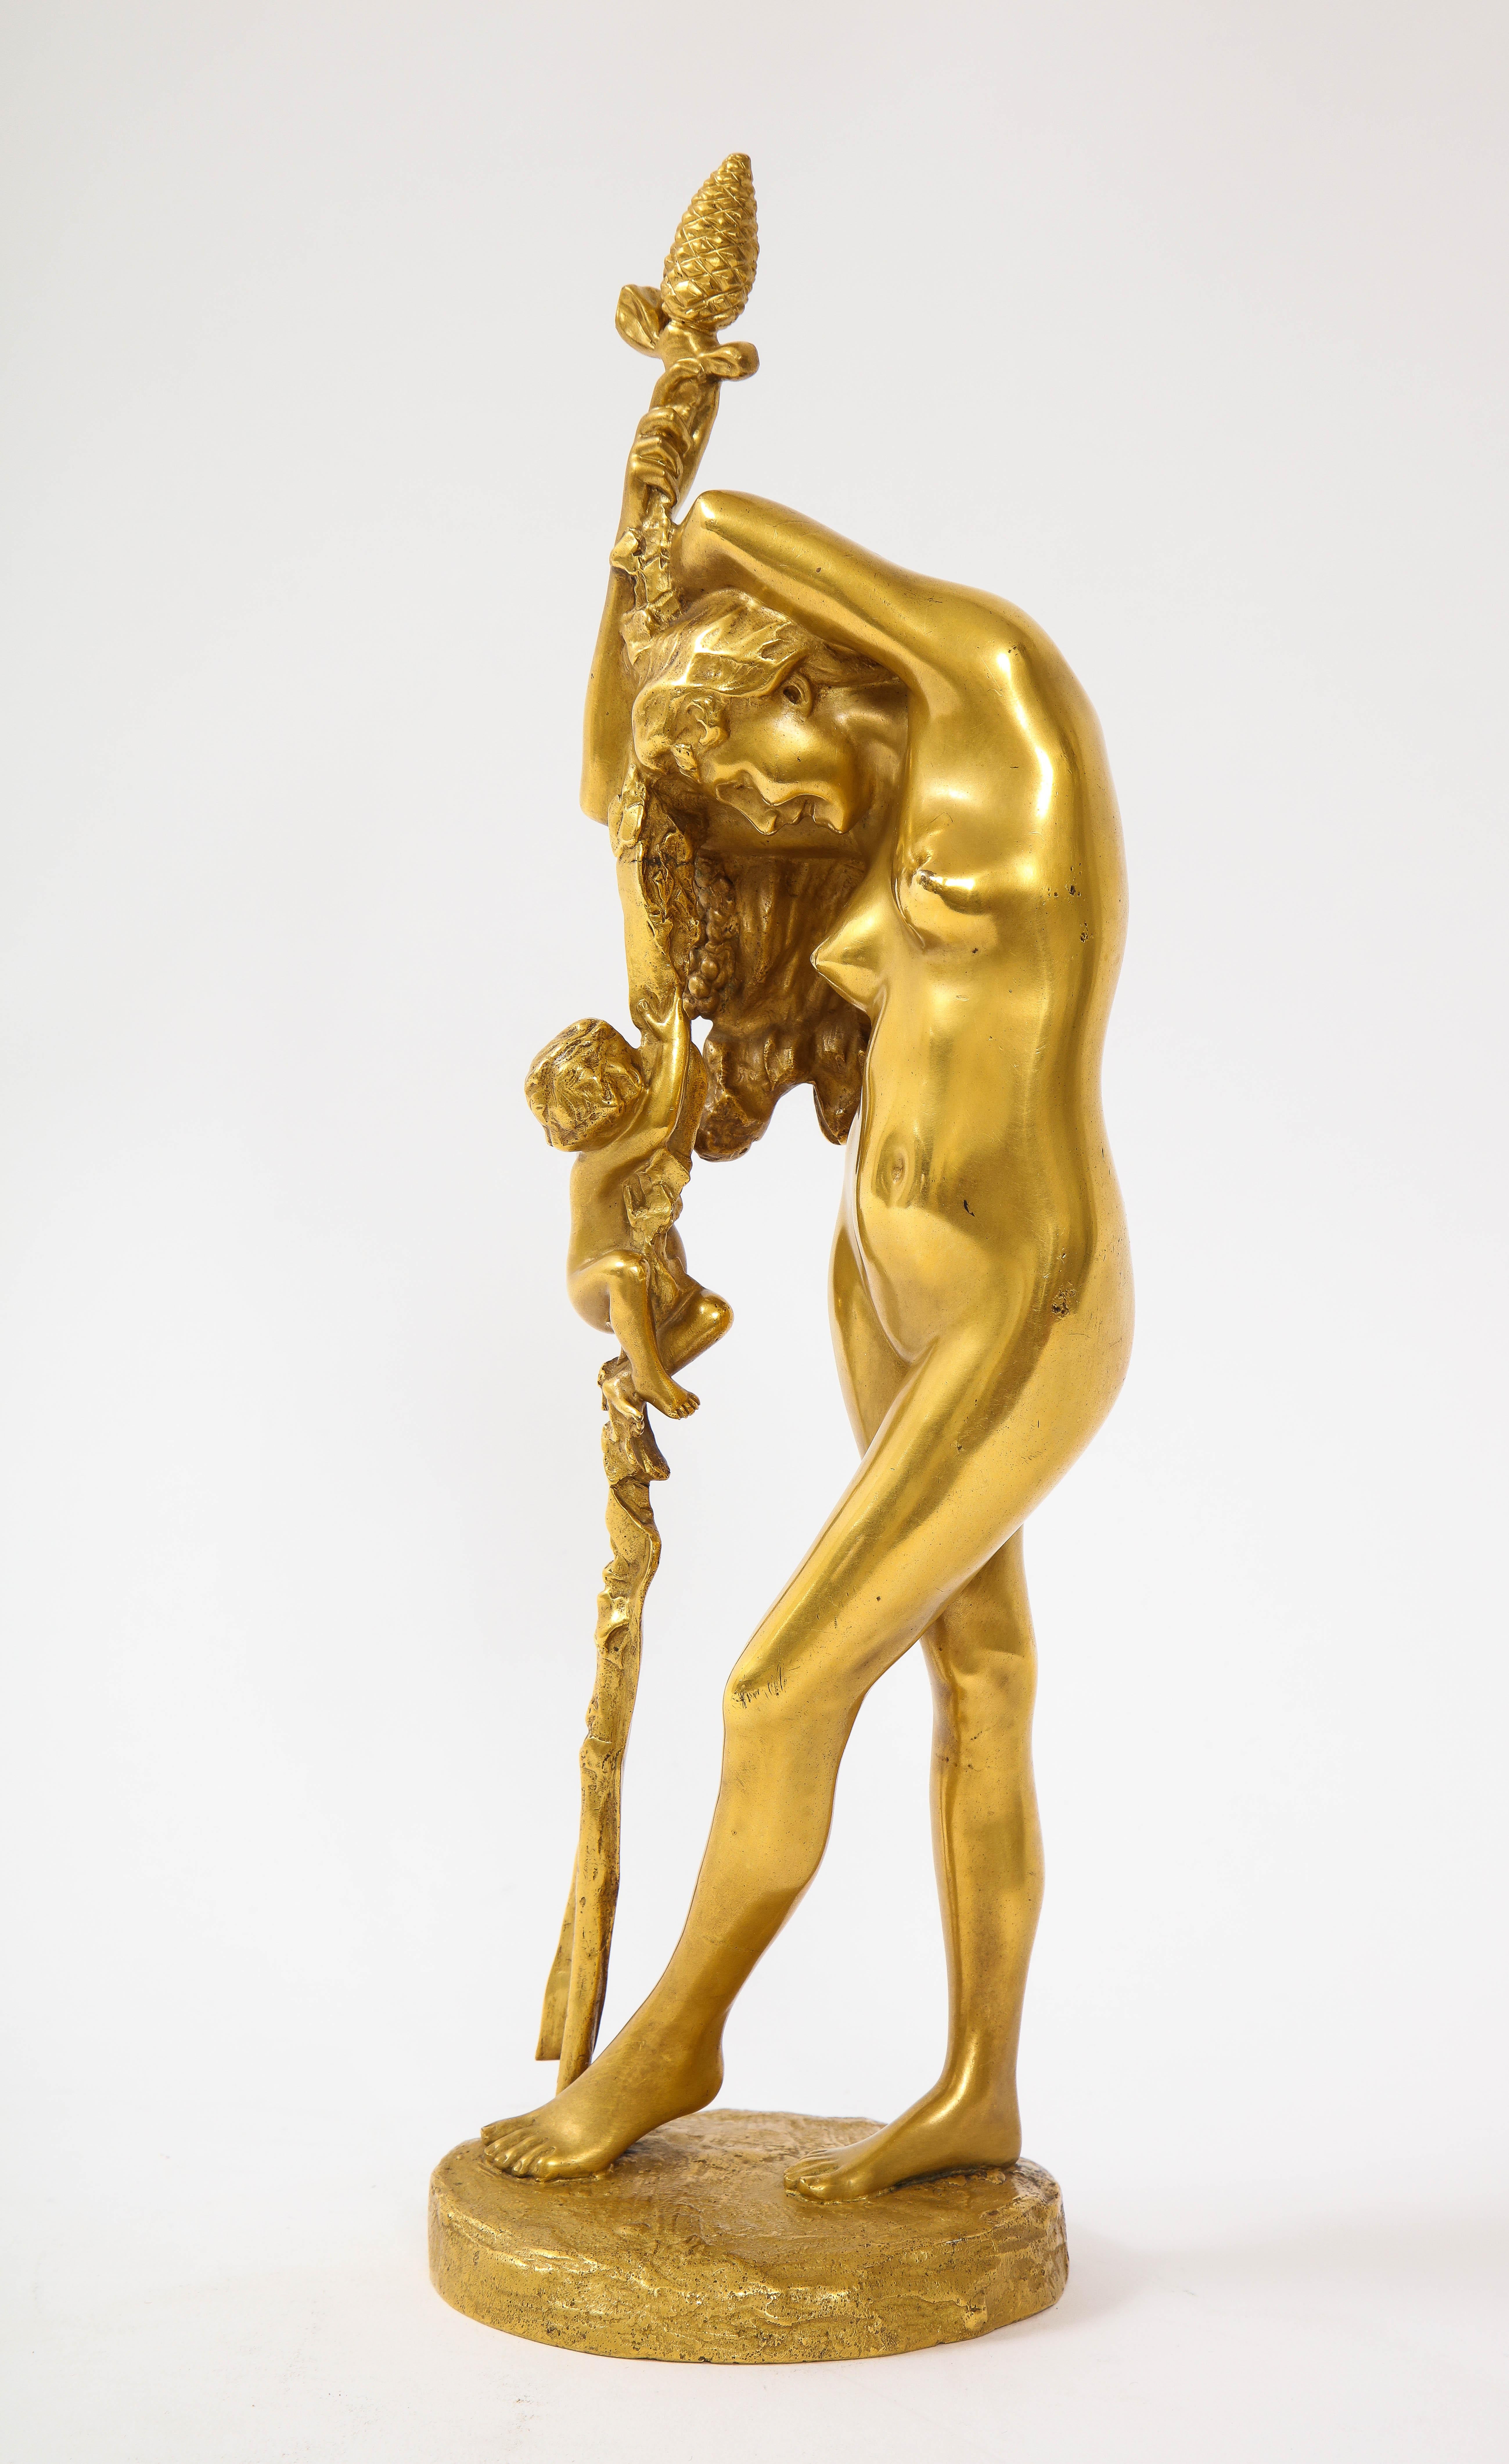 Magnifique sculpture française en bronze doré du XIXe siècle représentant une Baccante, par Jean-Léon Gérôme. Cette incroyable sculpture est l'œuvre de Jean-Léon Gérôme (français, 1824-1904), l'un des artistes académiques français les plus célèbres